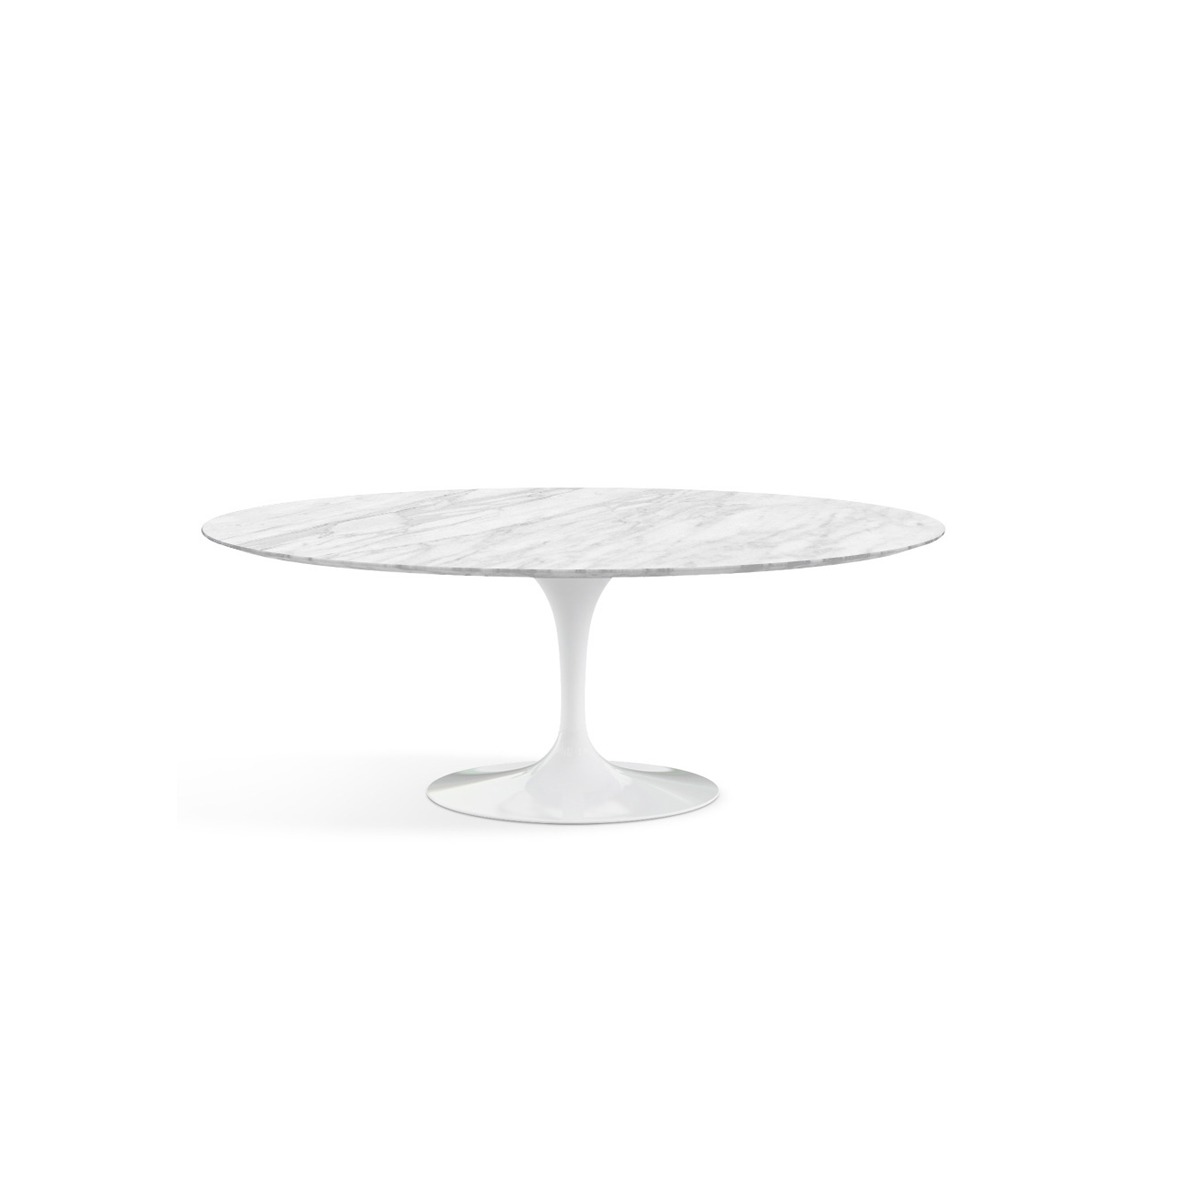 KNOLL Saarinen Oval Dining Table - 198cm